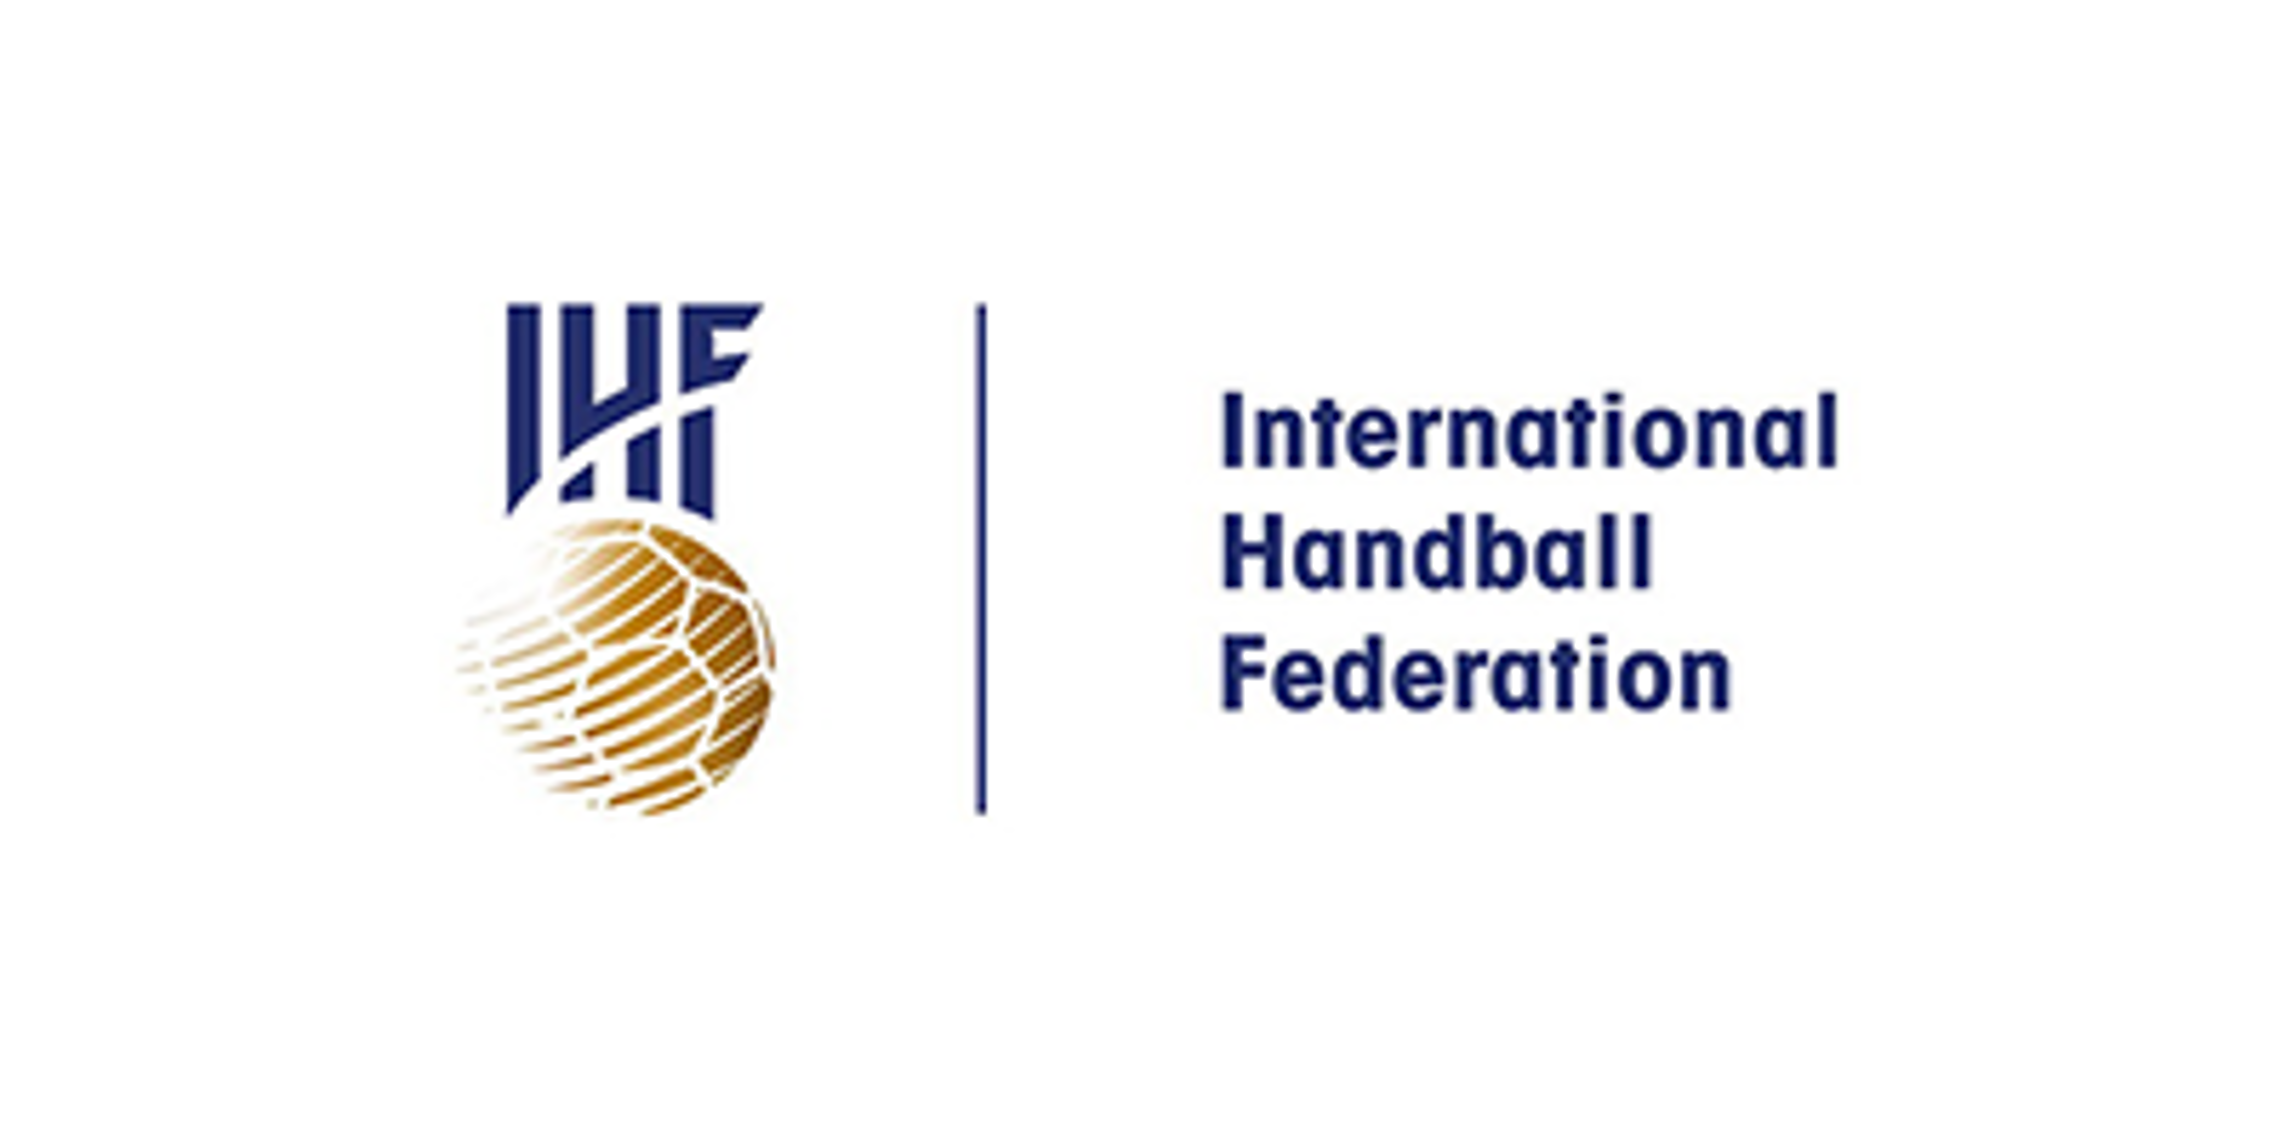 IHF - International Handball Federation